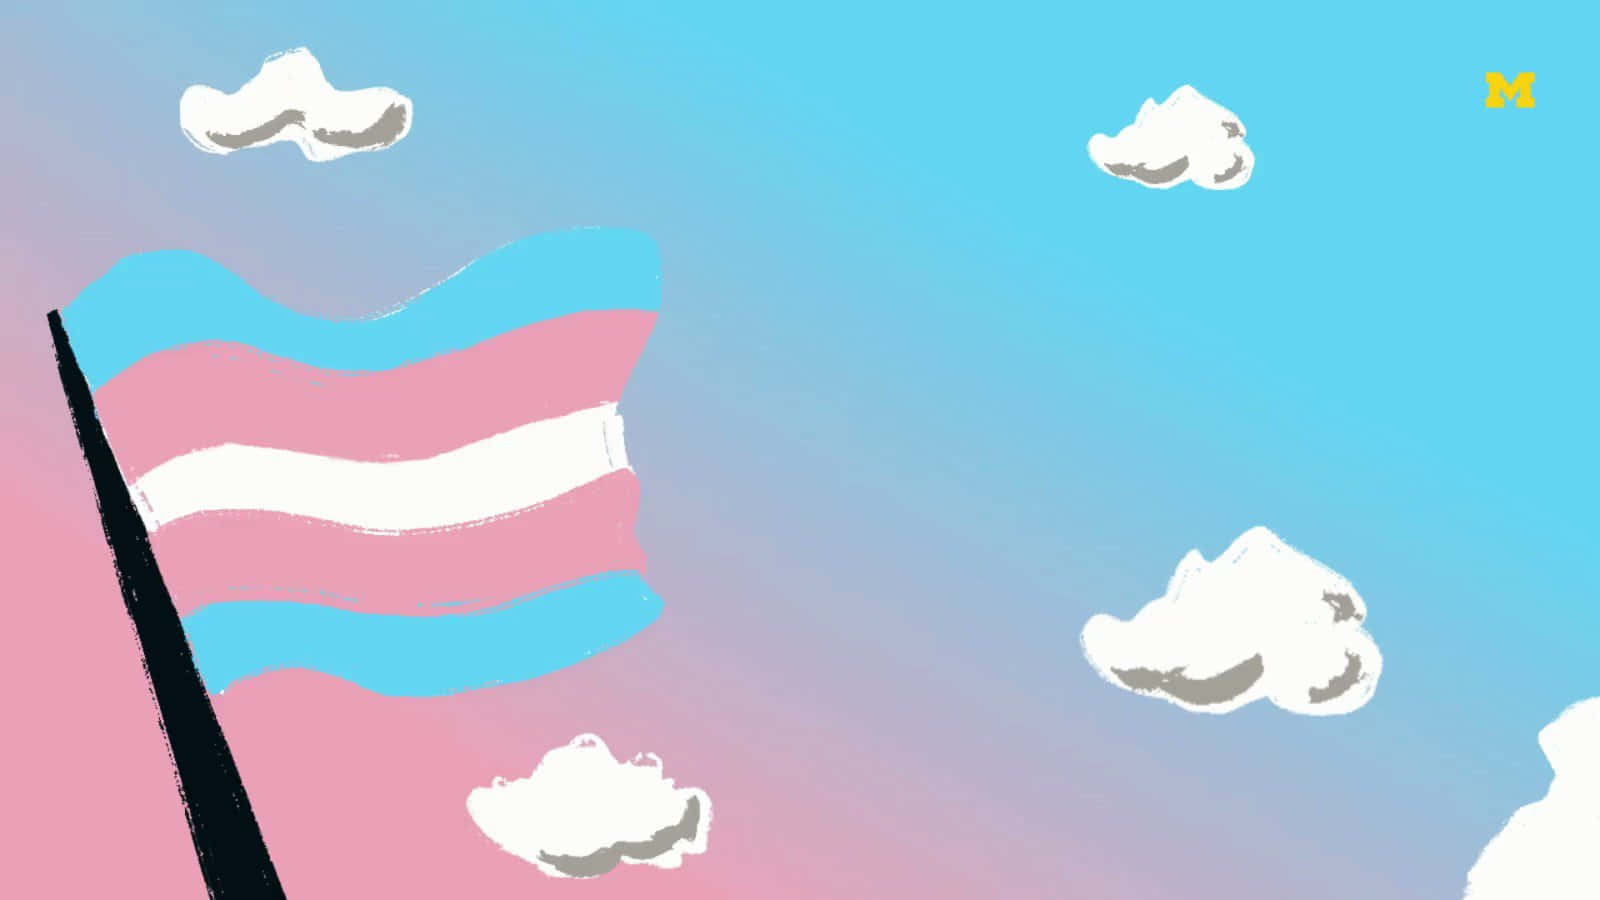 Aesthetic Transgender Pride Flag Waves in the Wind